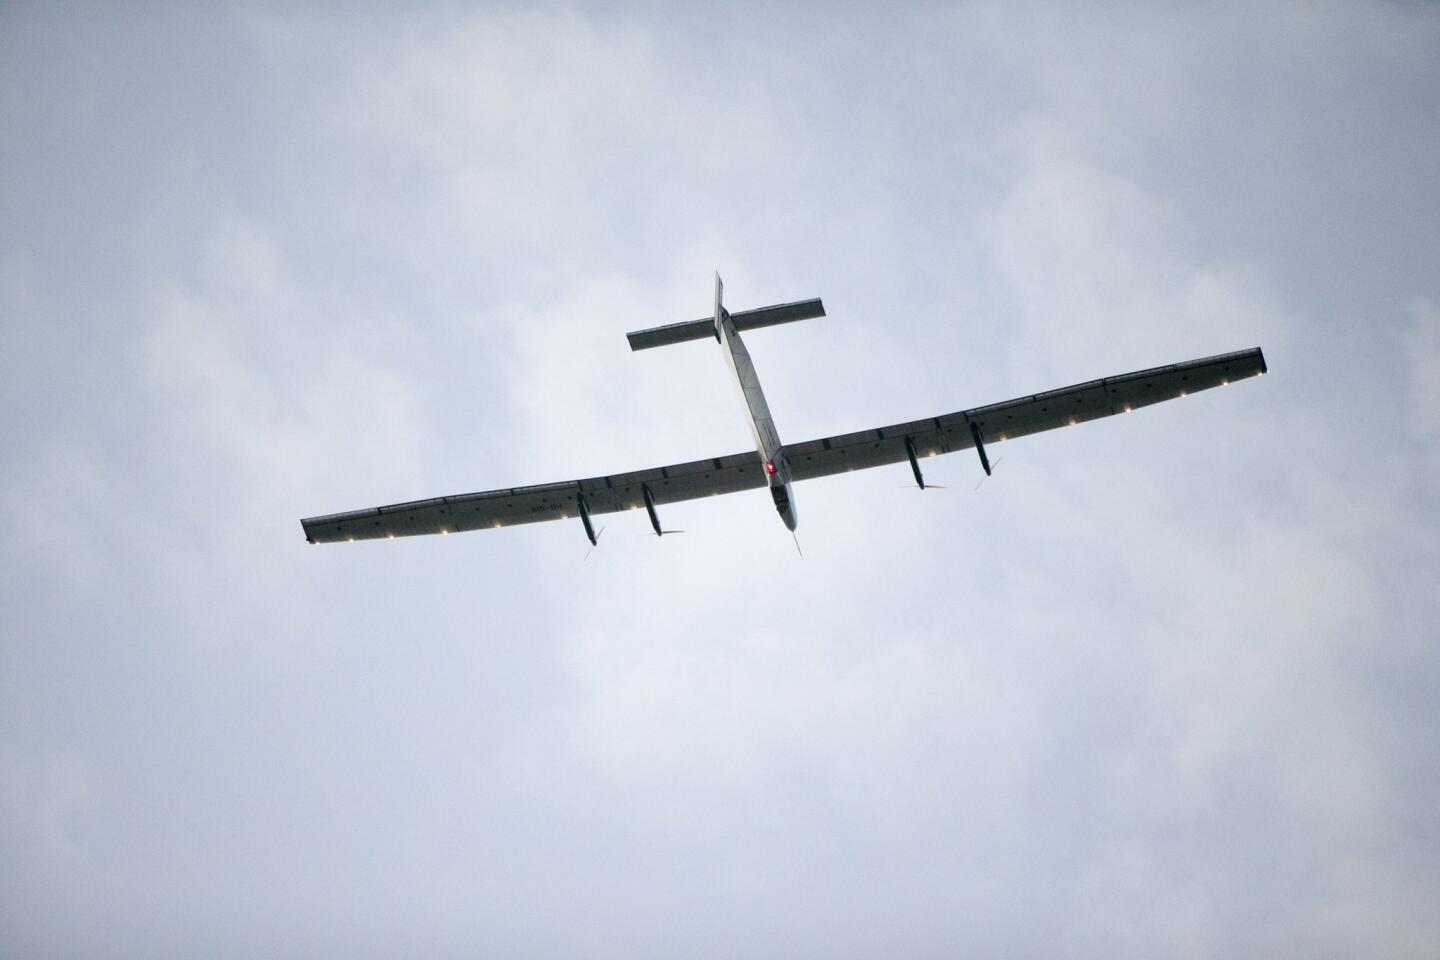 Solar Impulse 2's record-breaking flight